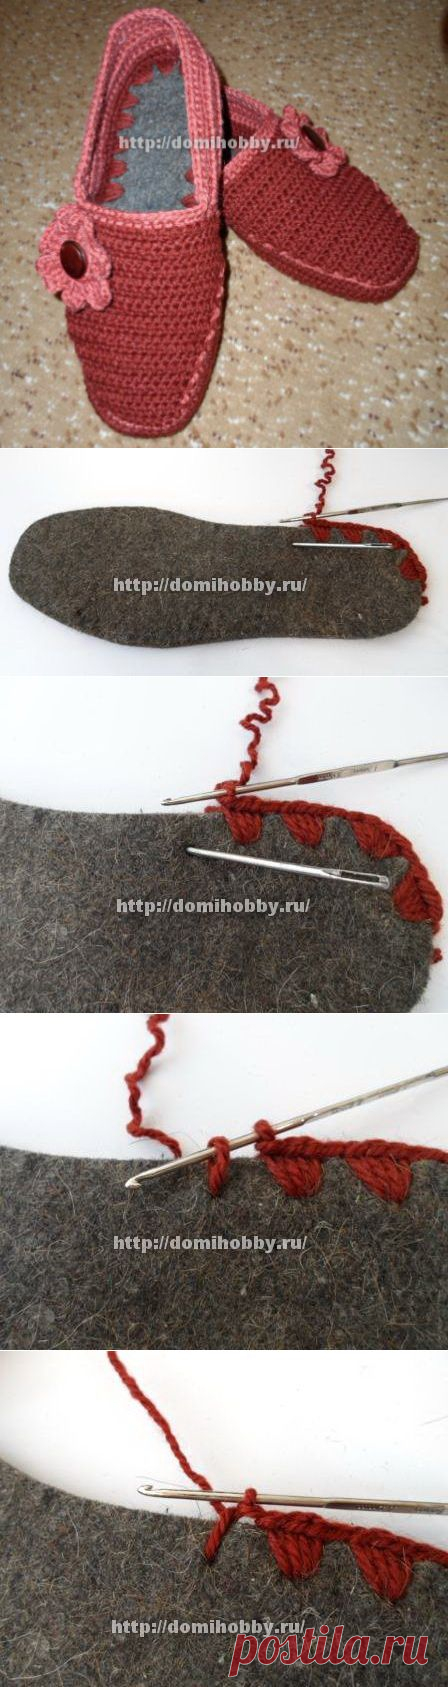 Вязание тапочек с войлочной стелькой